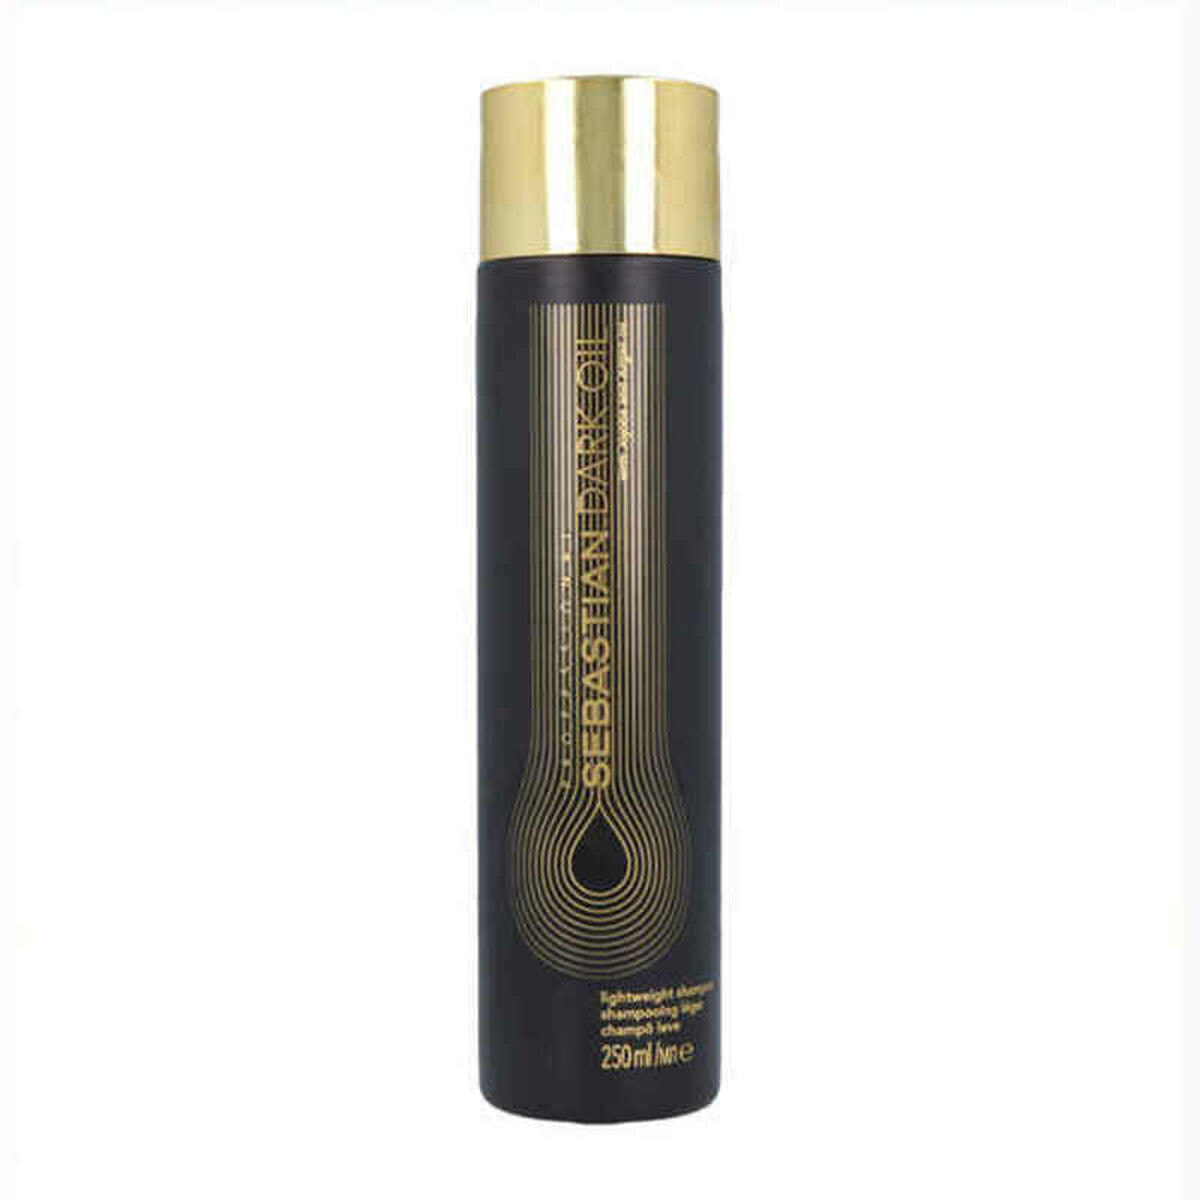 Sebastian Dark Oil Lightweight Shampoo Легкий разглаживающий шампунь с маслами арганы и жожоба, для всех типов волос